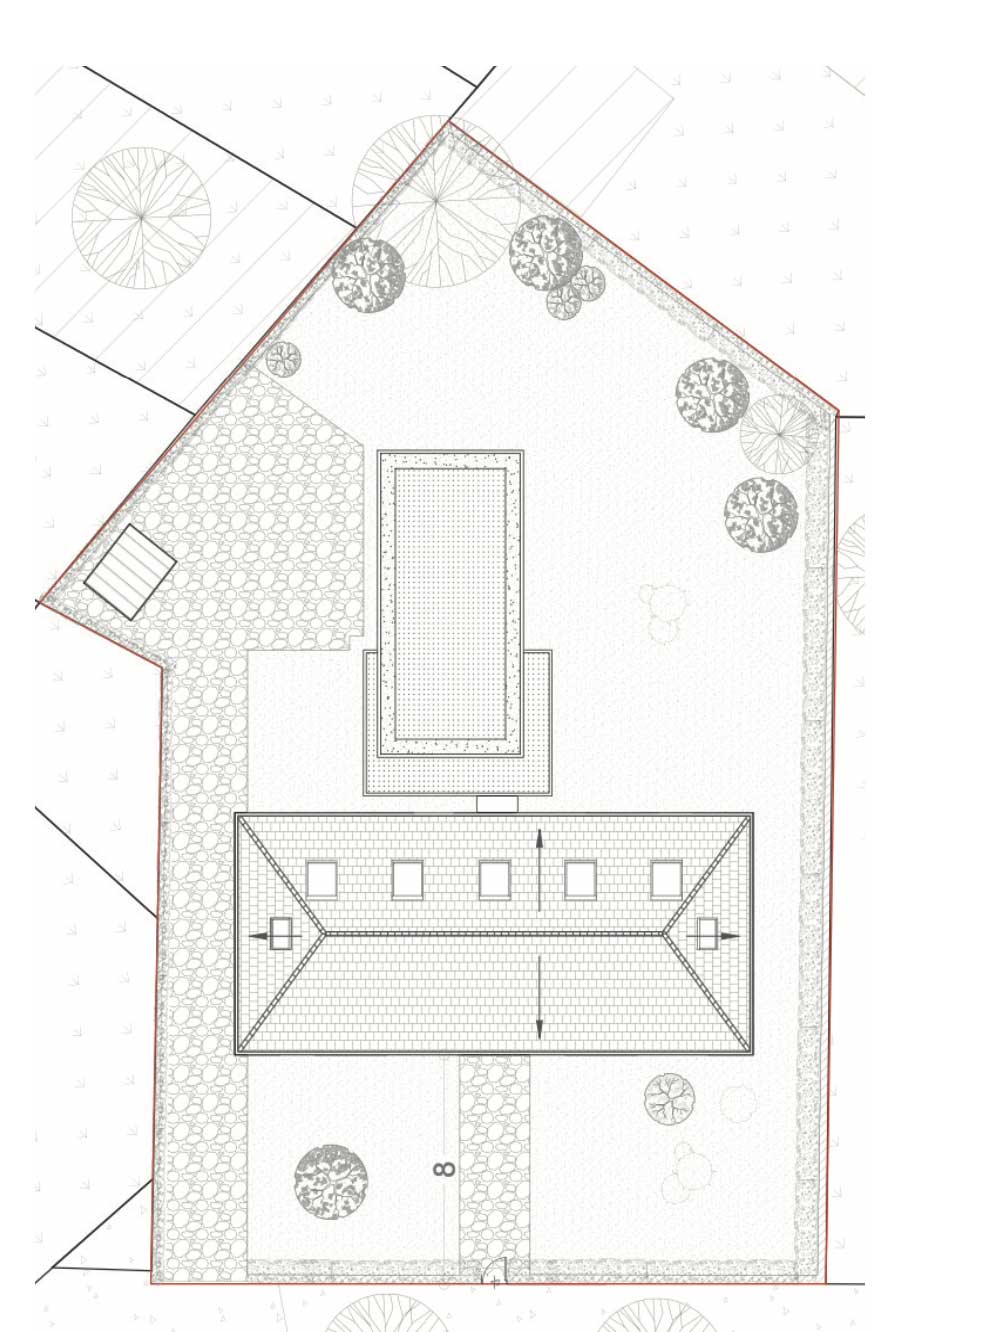 Plan de toiture de la maison coignet